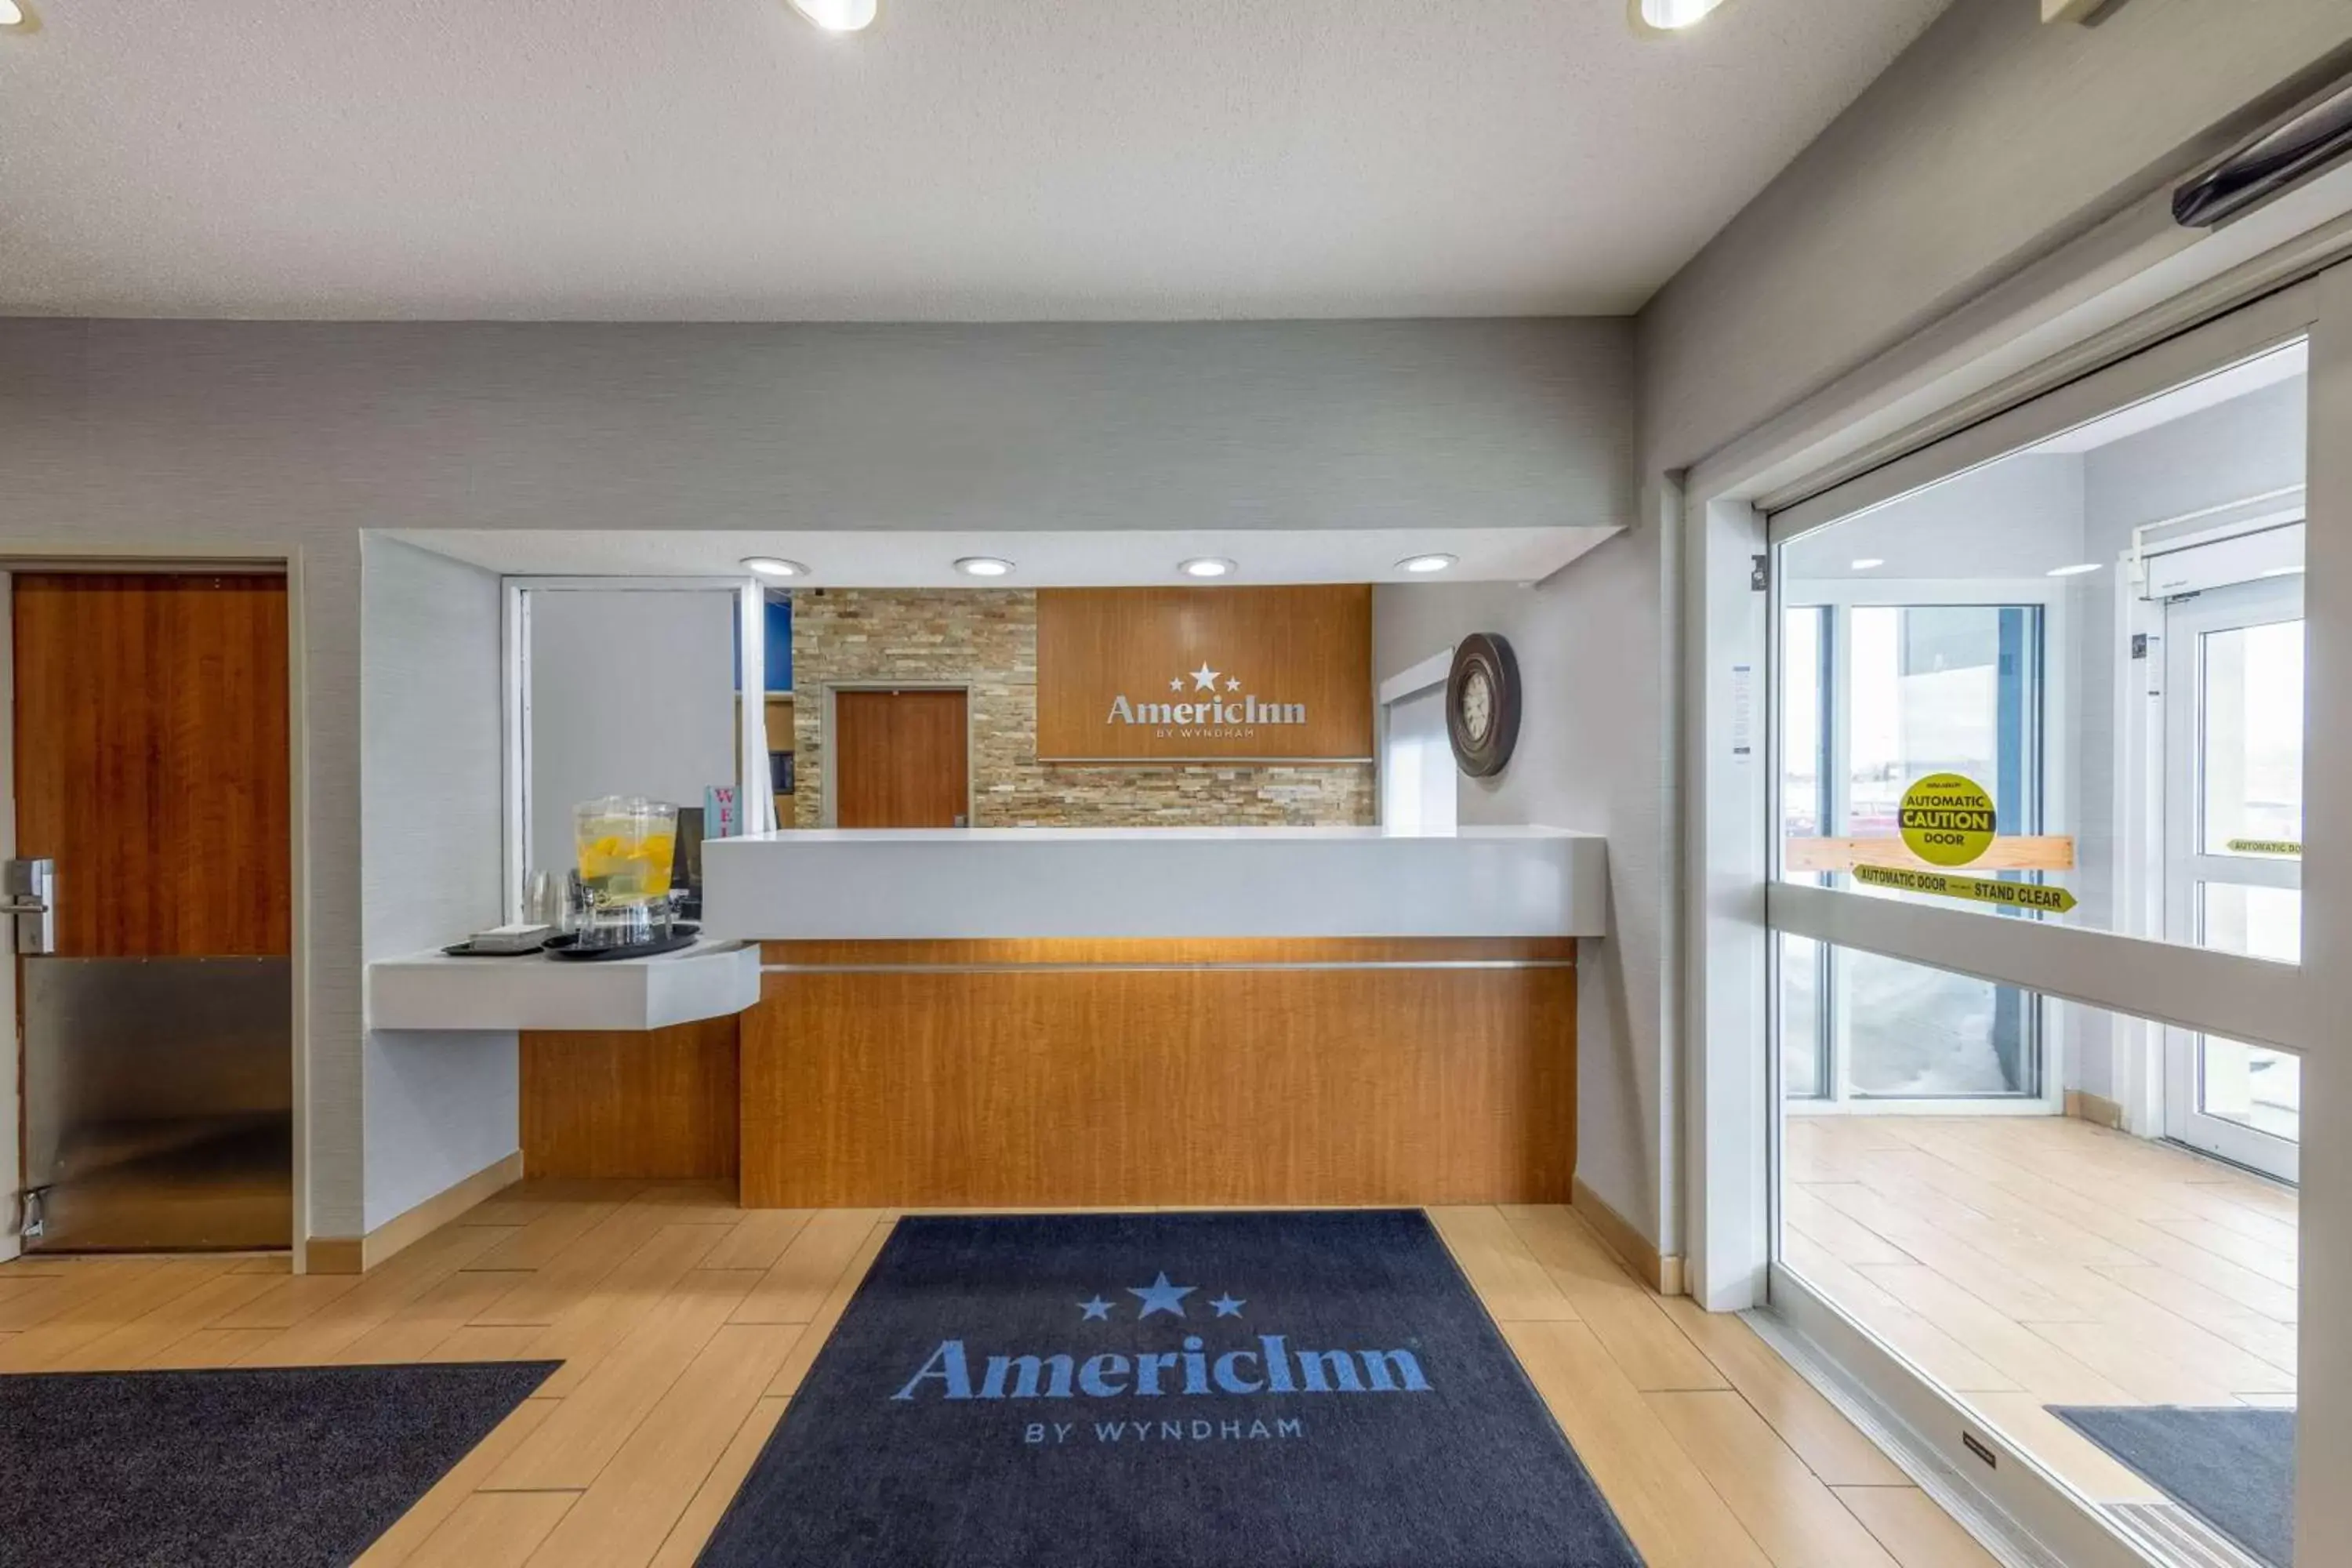 Lobby or reception in AmericInn by Wyndham Duluth